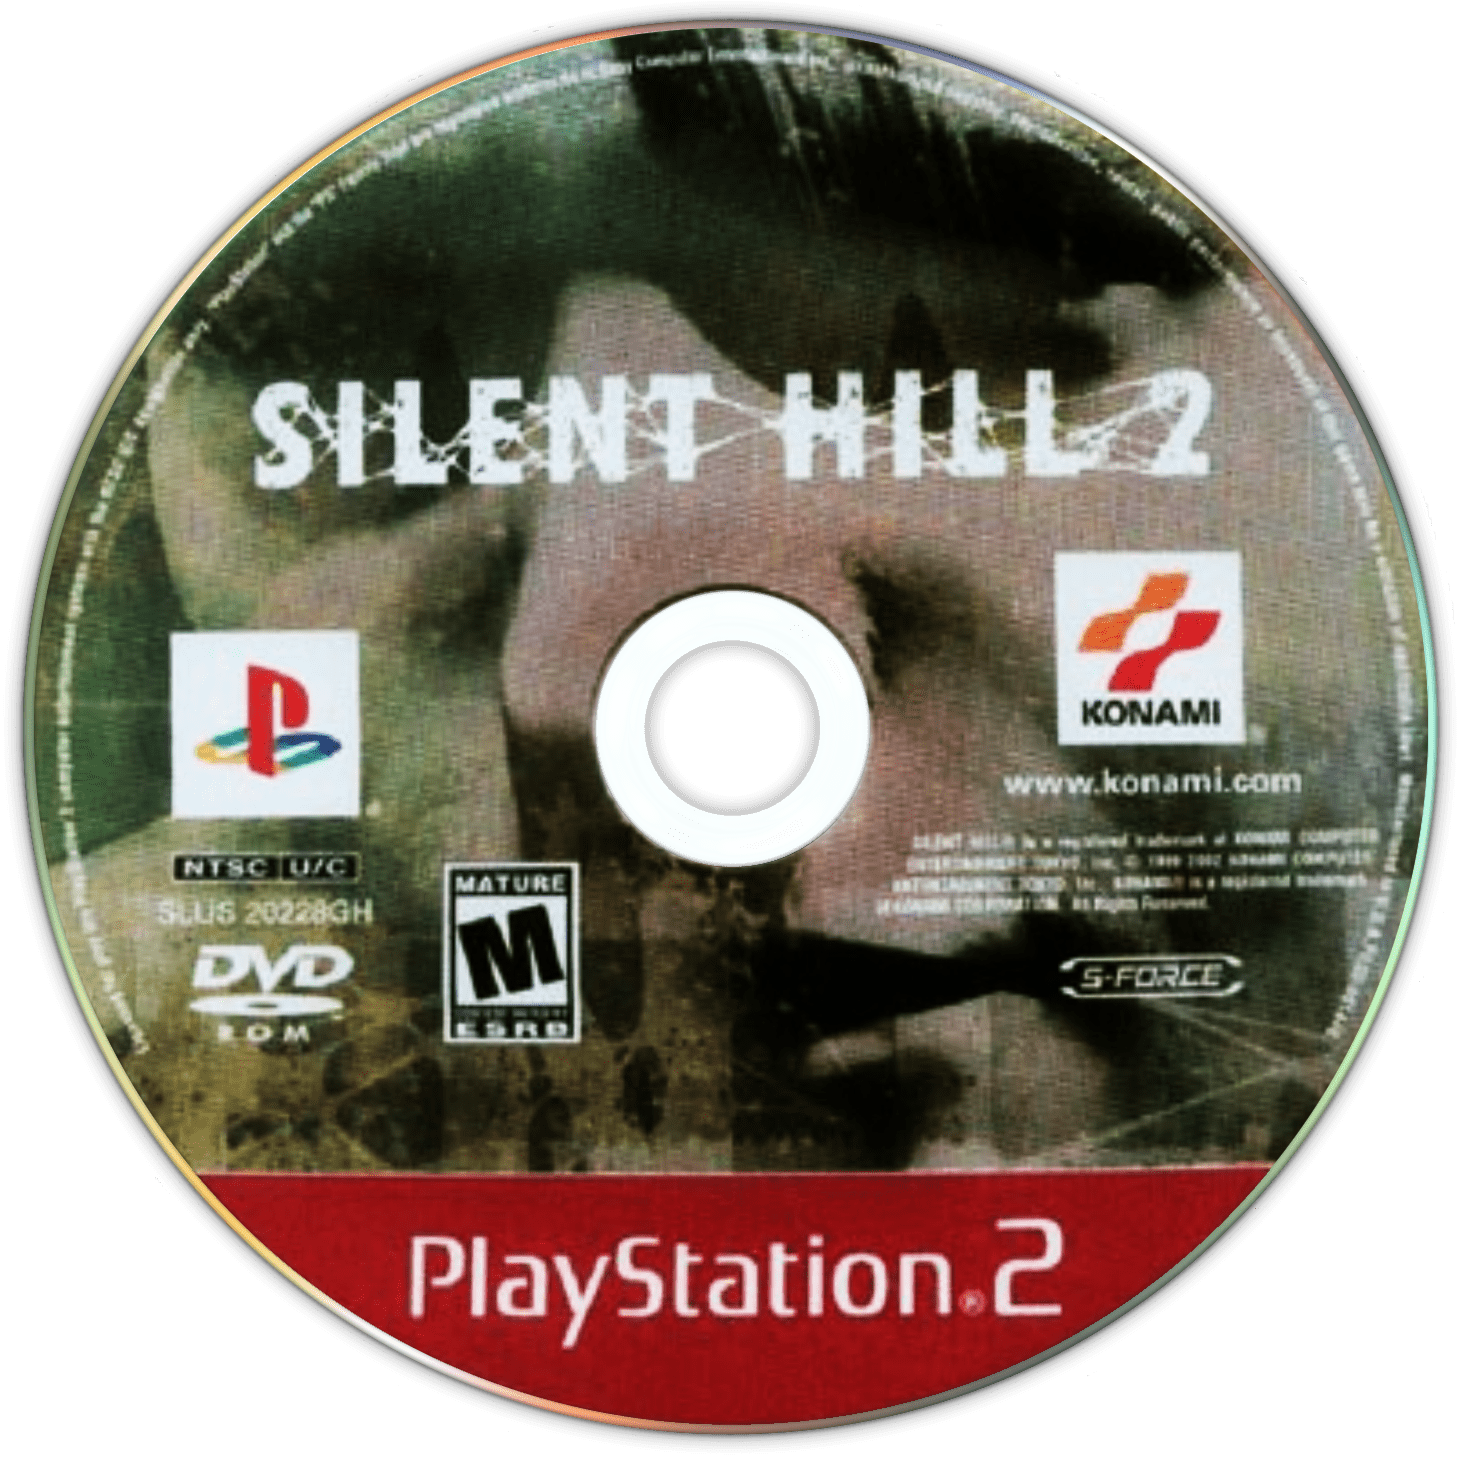 Silent hill director cut. Silent Hill ps2 диск. Обложка диска Silent Hill 2 ps2. Silent Hill 2 диск. Silent Hill 2 ps2 диск.